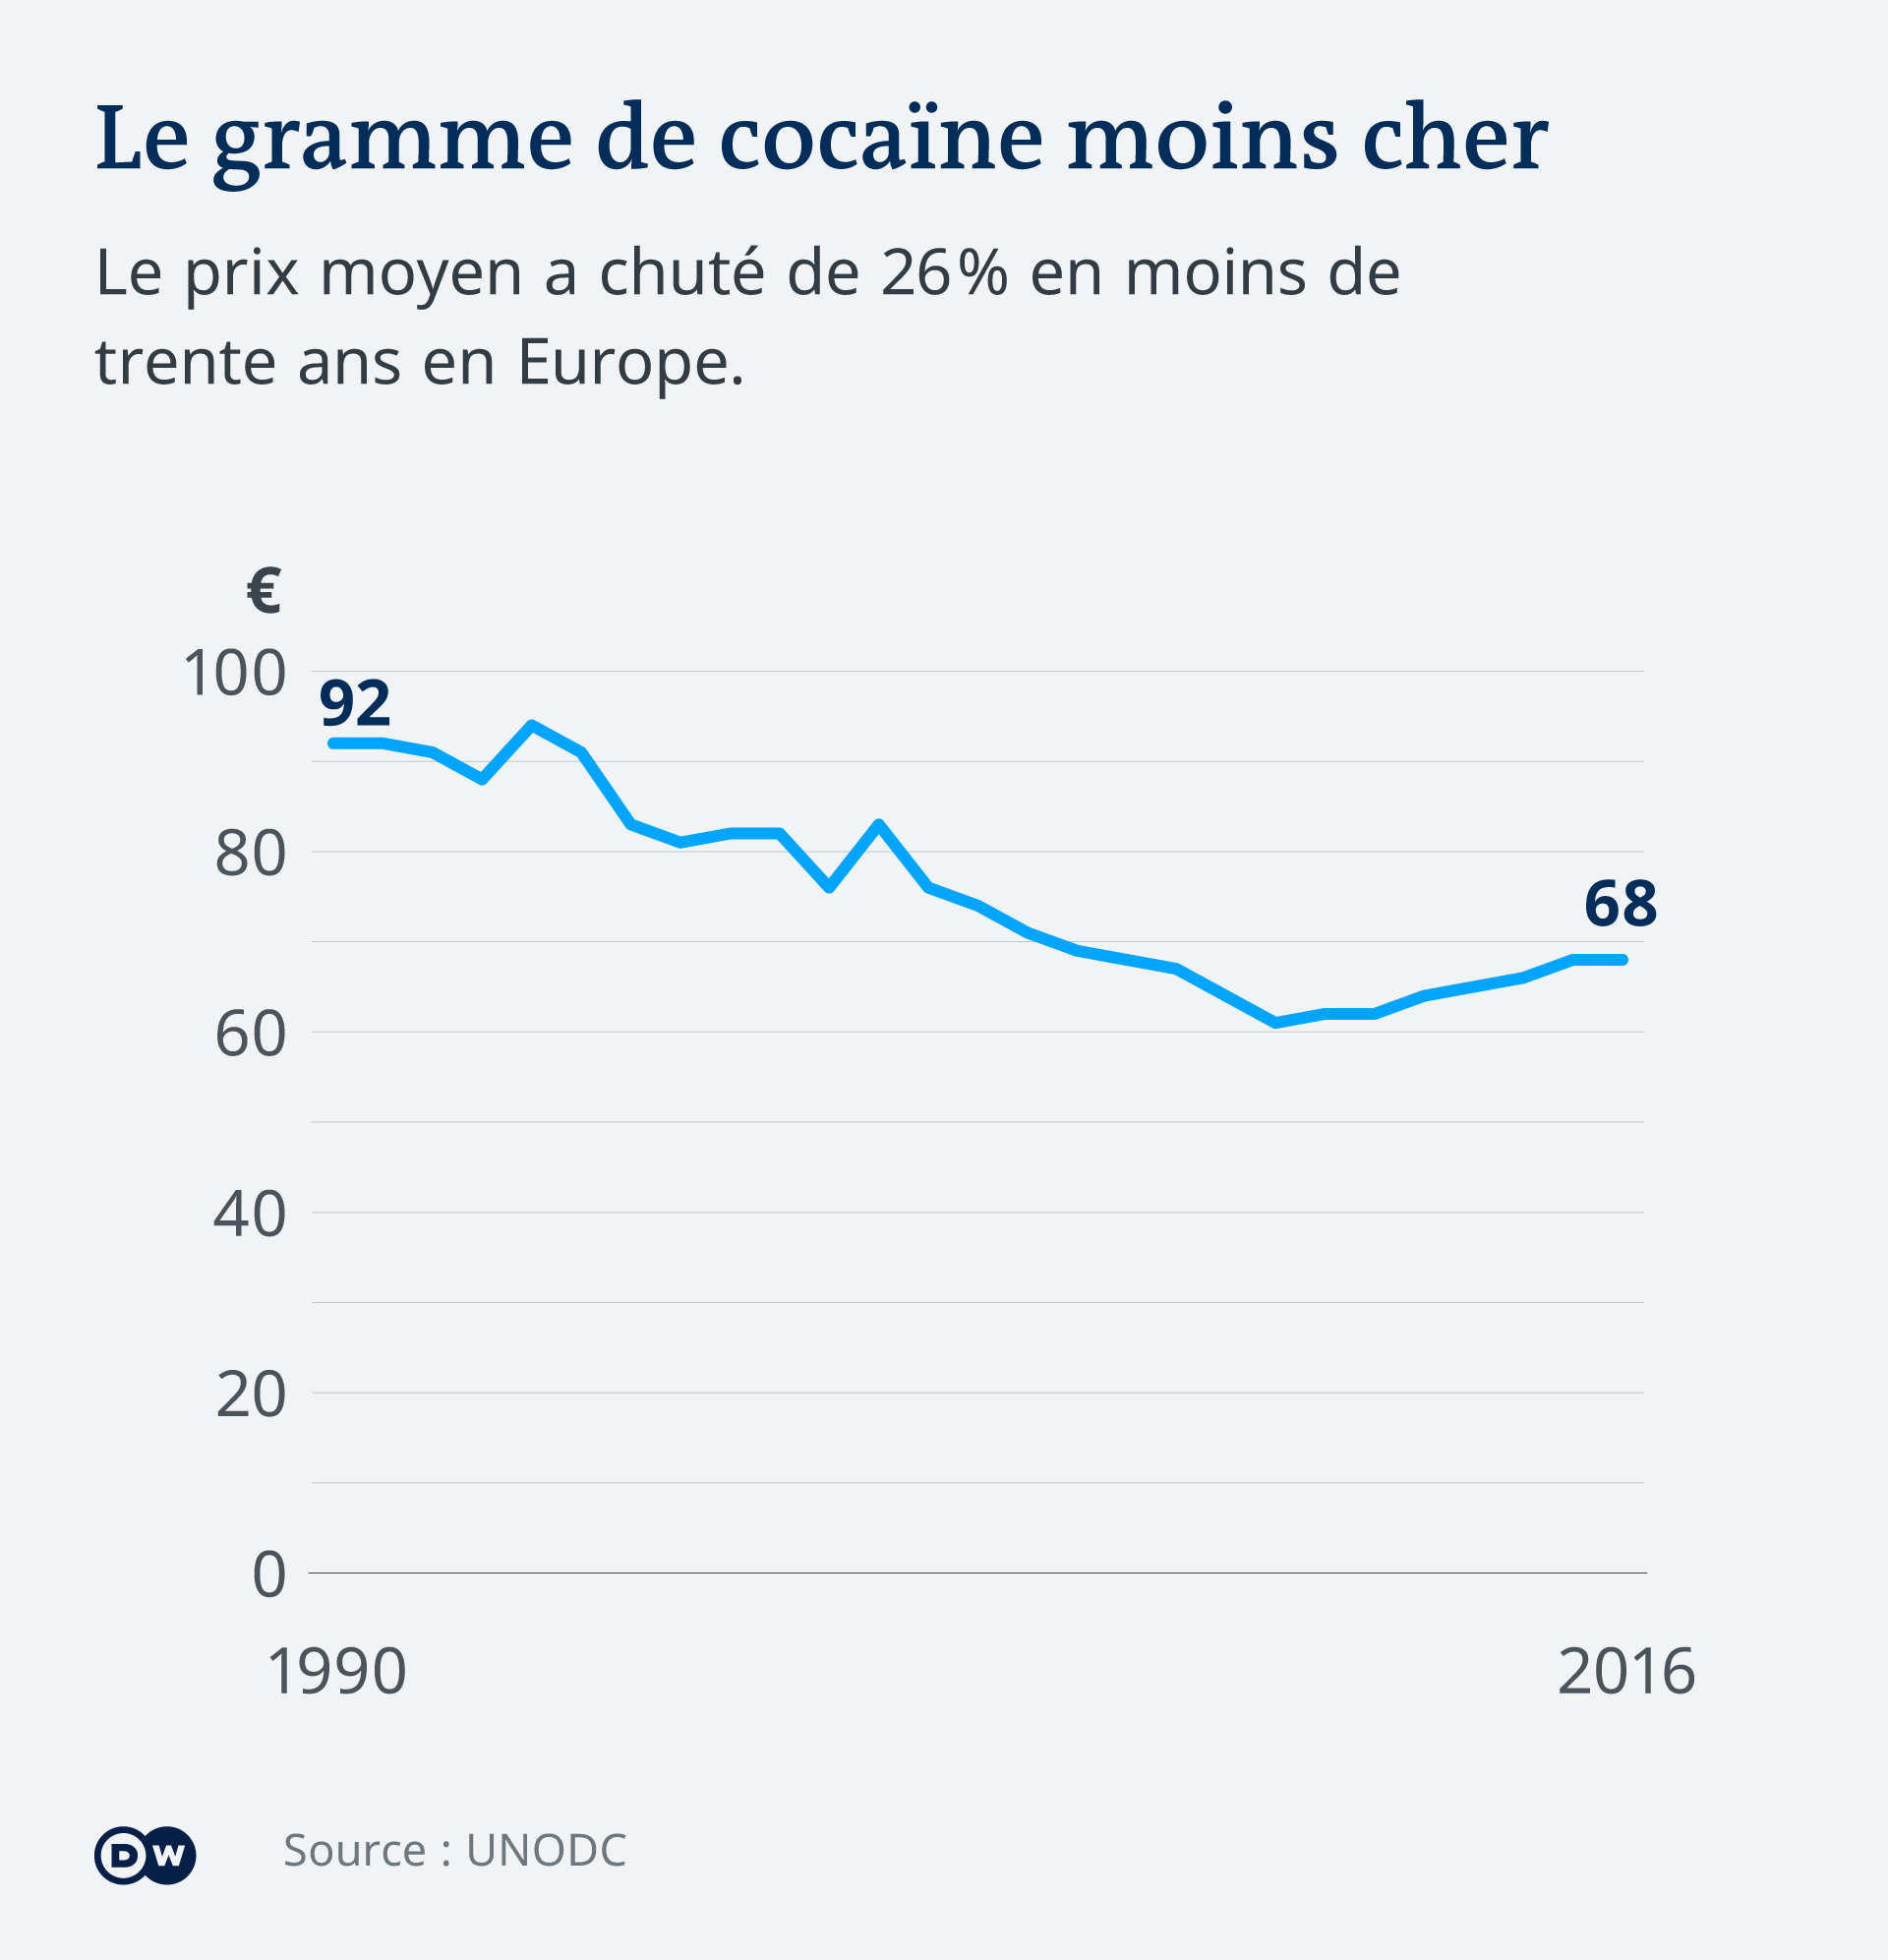 La chute du prix moyen du gramme de cocaïne est à mettre en parallèle avec la hausse des volumes livrés depuis l'Afrique.